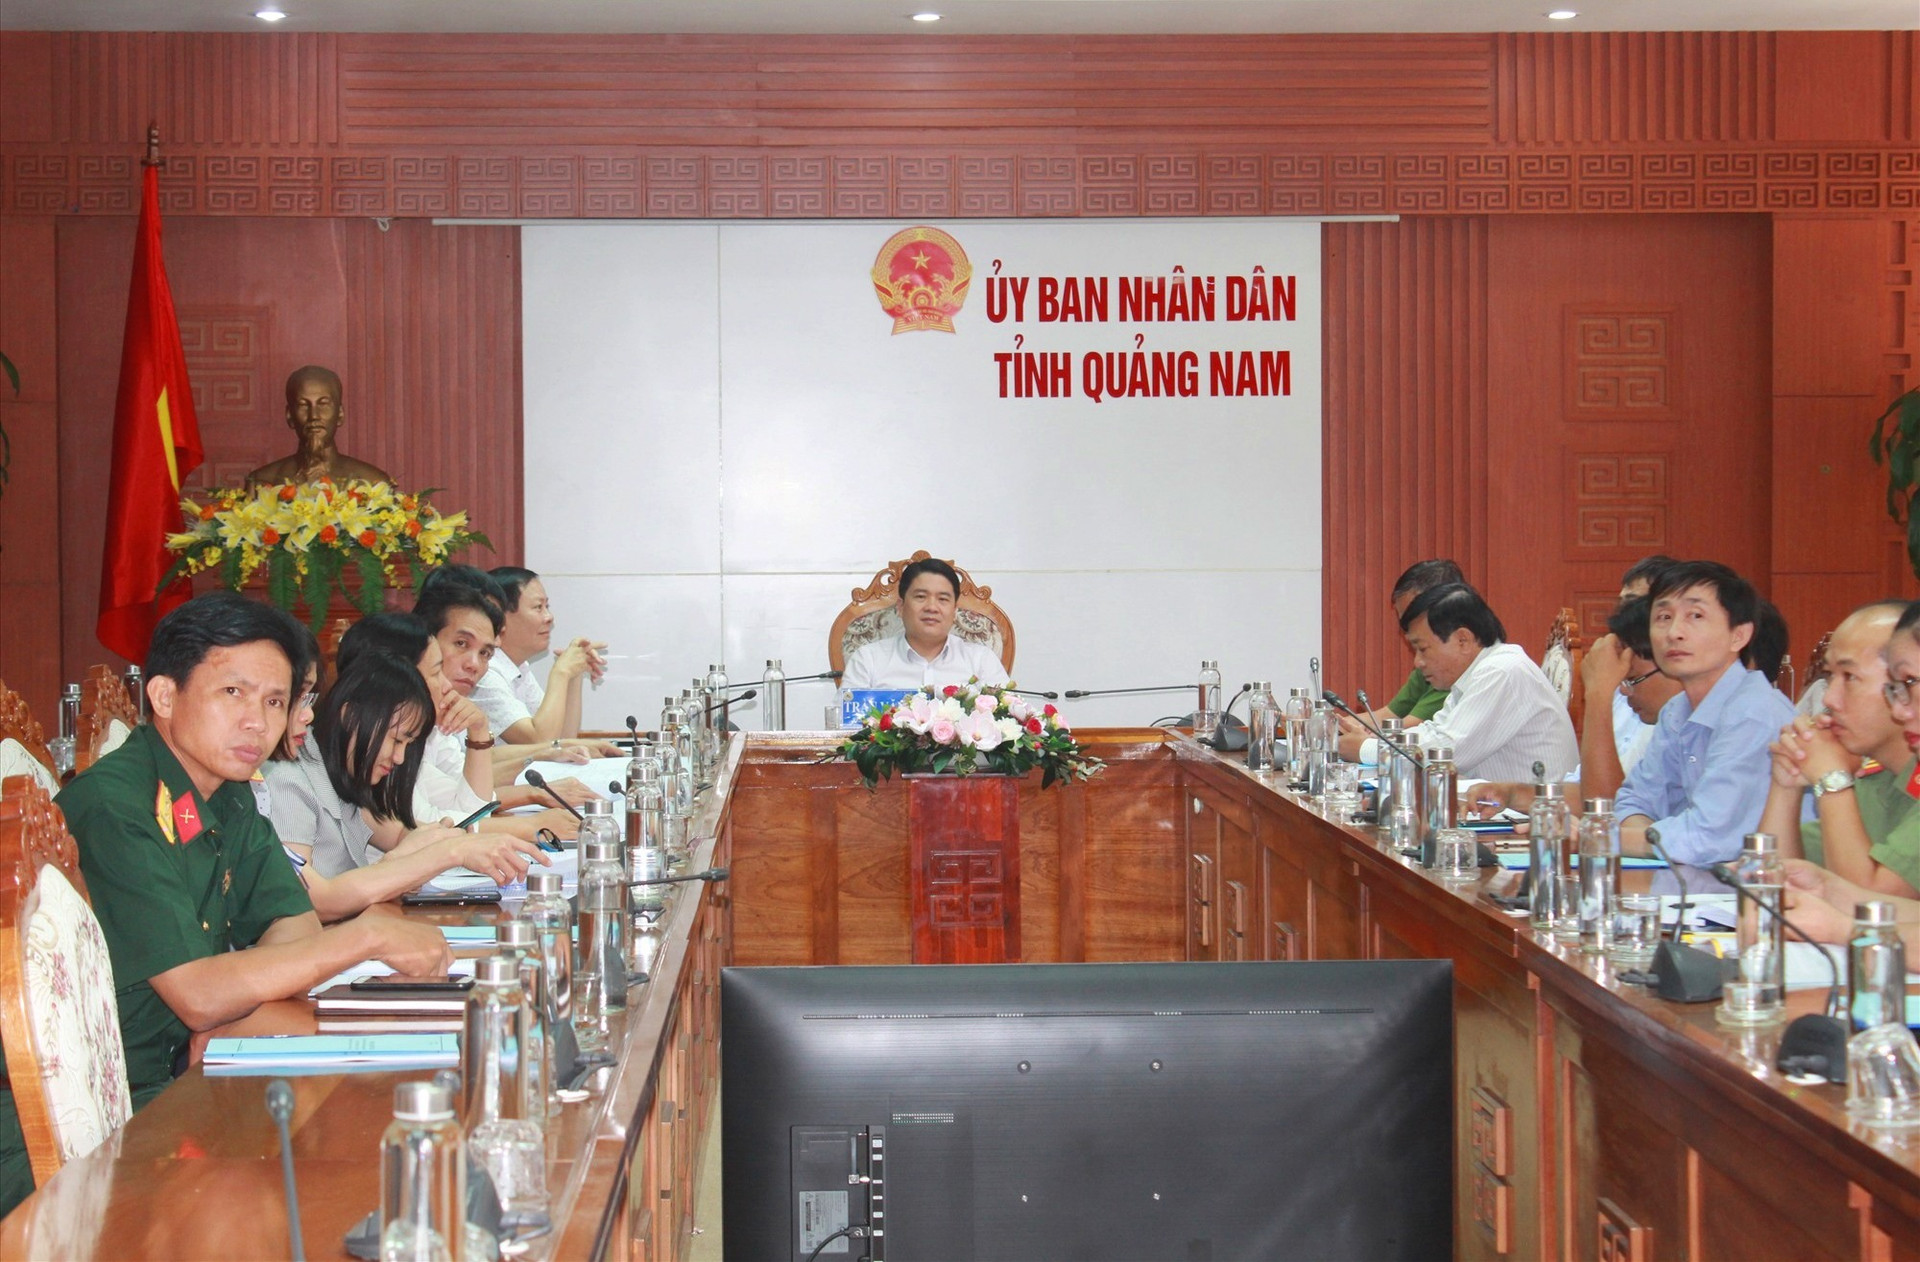 Phó Chủ tịch UBND tỉnh Trần Văn Tân chủ trì điểm cầu trực tuyến tại UBND tỉnh. Ảnh: T.C